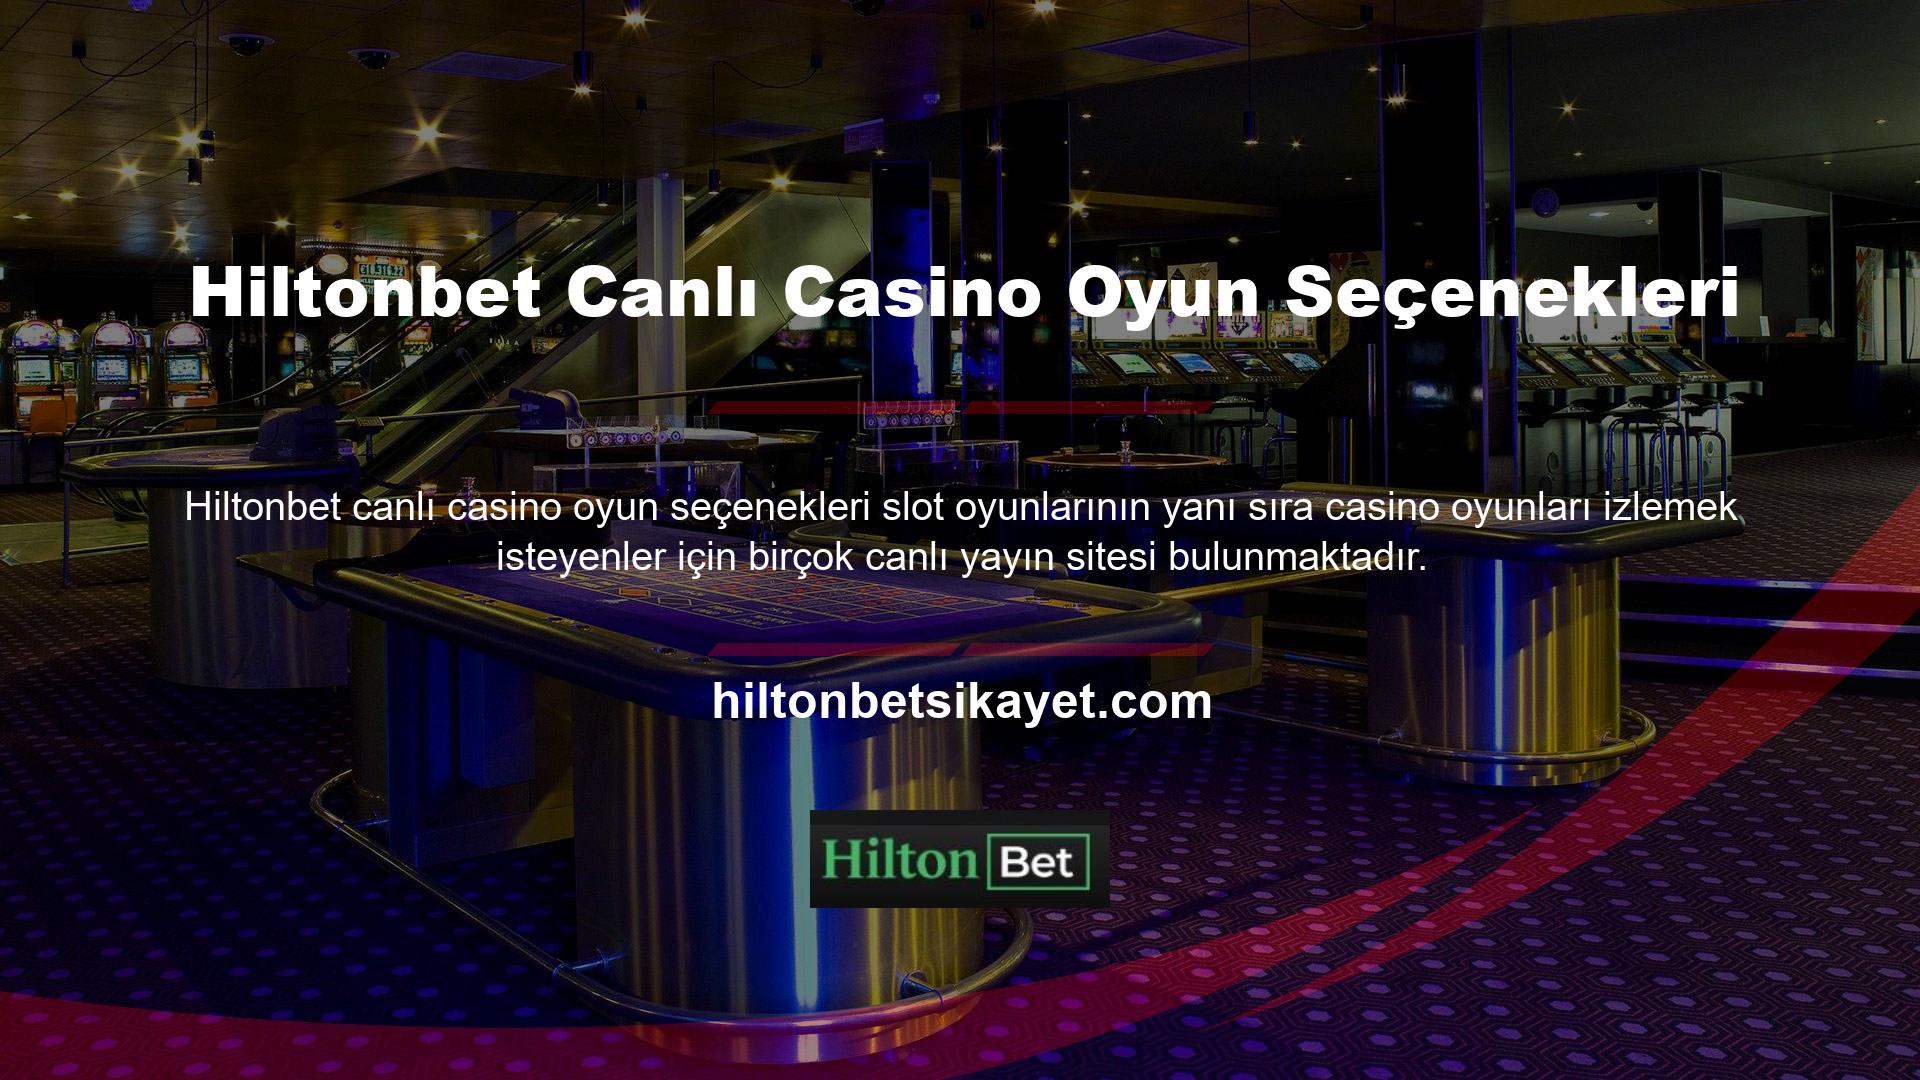 Bireyler ilginç buldukları siteleri keşfetmeyi seçtiklerinde Hiltonbet canlı casino sitesi en popüler çevrimiçi sitelerden biridir